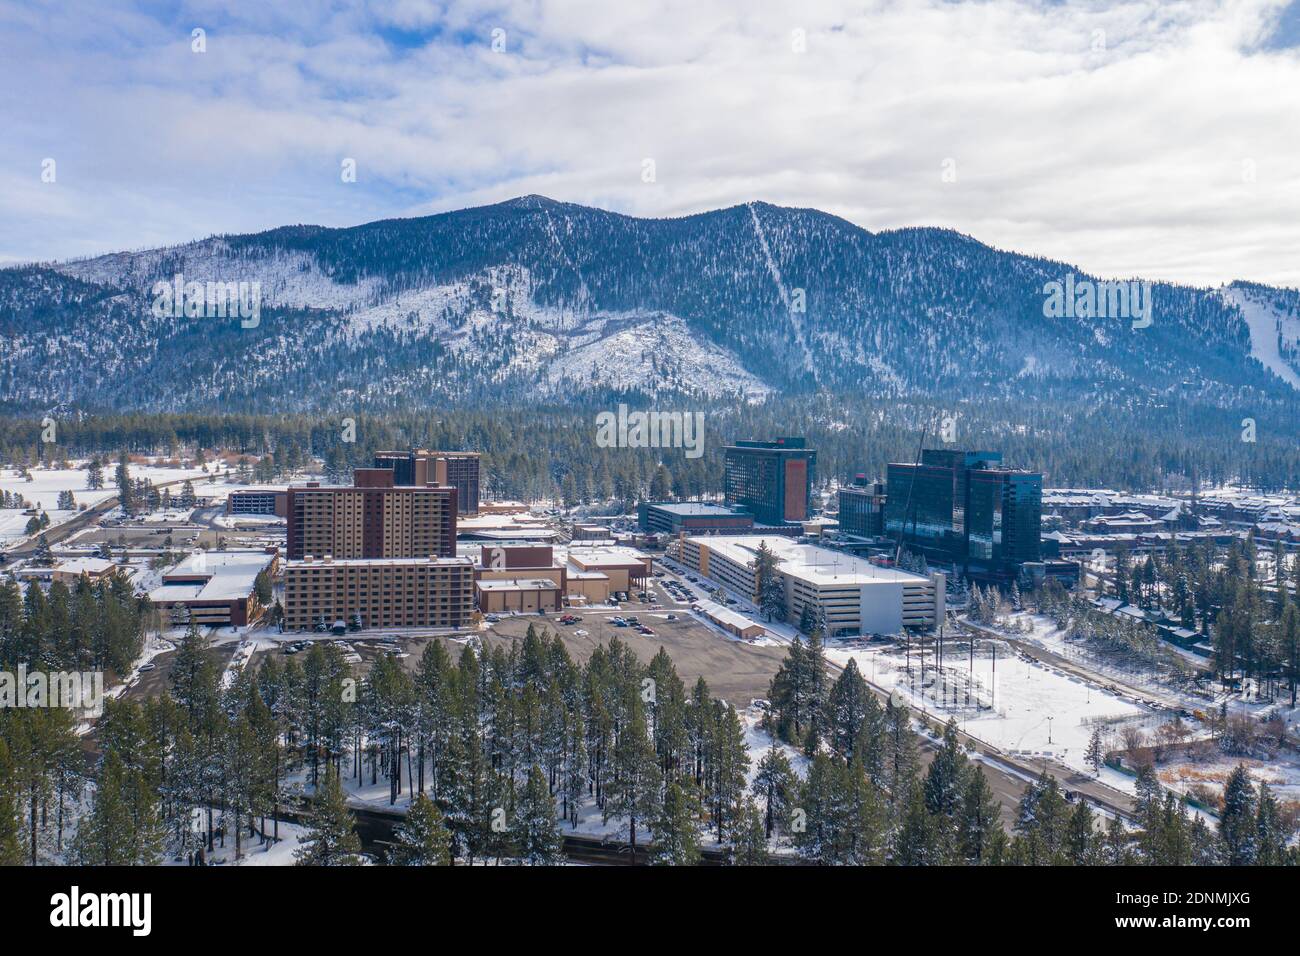 STATELINE, NEVADA, ÉTATS-UNIS - 15 décembre 2020 : les casinos de Stateline, Nevada se tiennent sous la station de ski de Heavenly Mountain, tandis que la neige d'hiver couvre la Banque D'Images